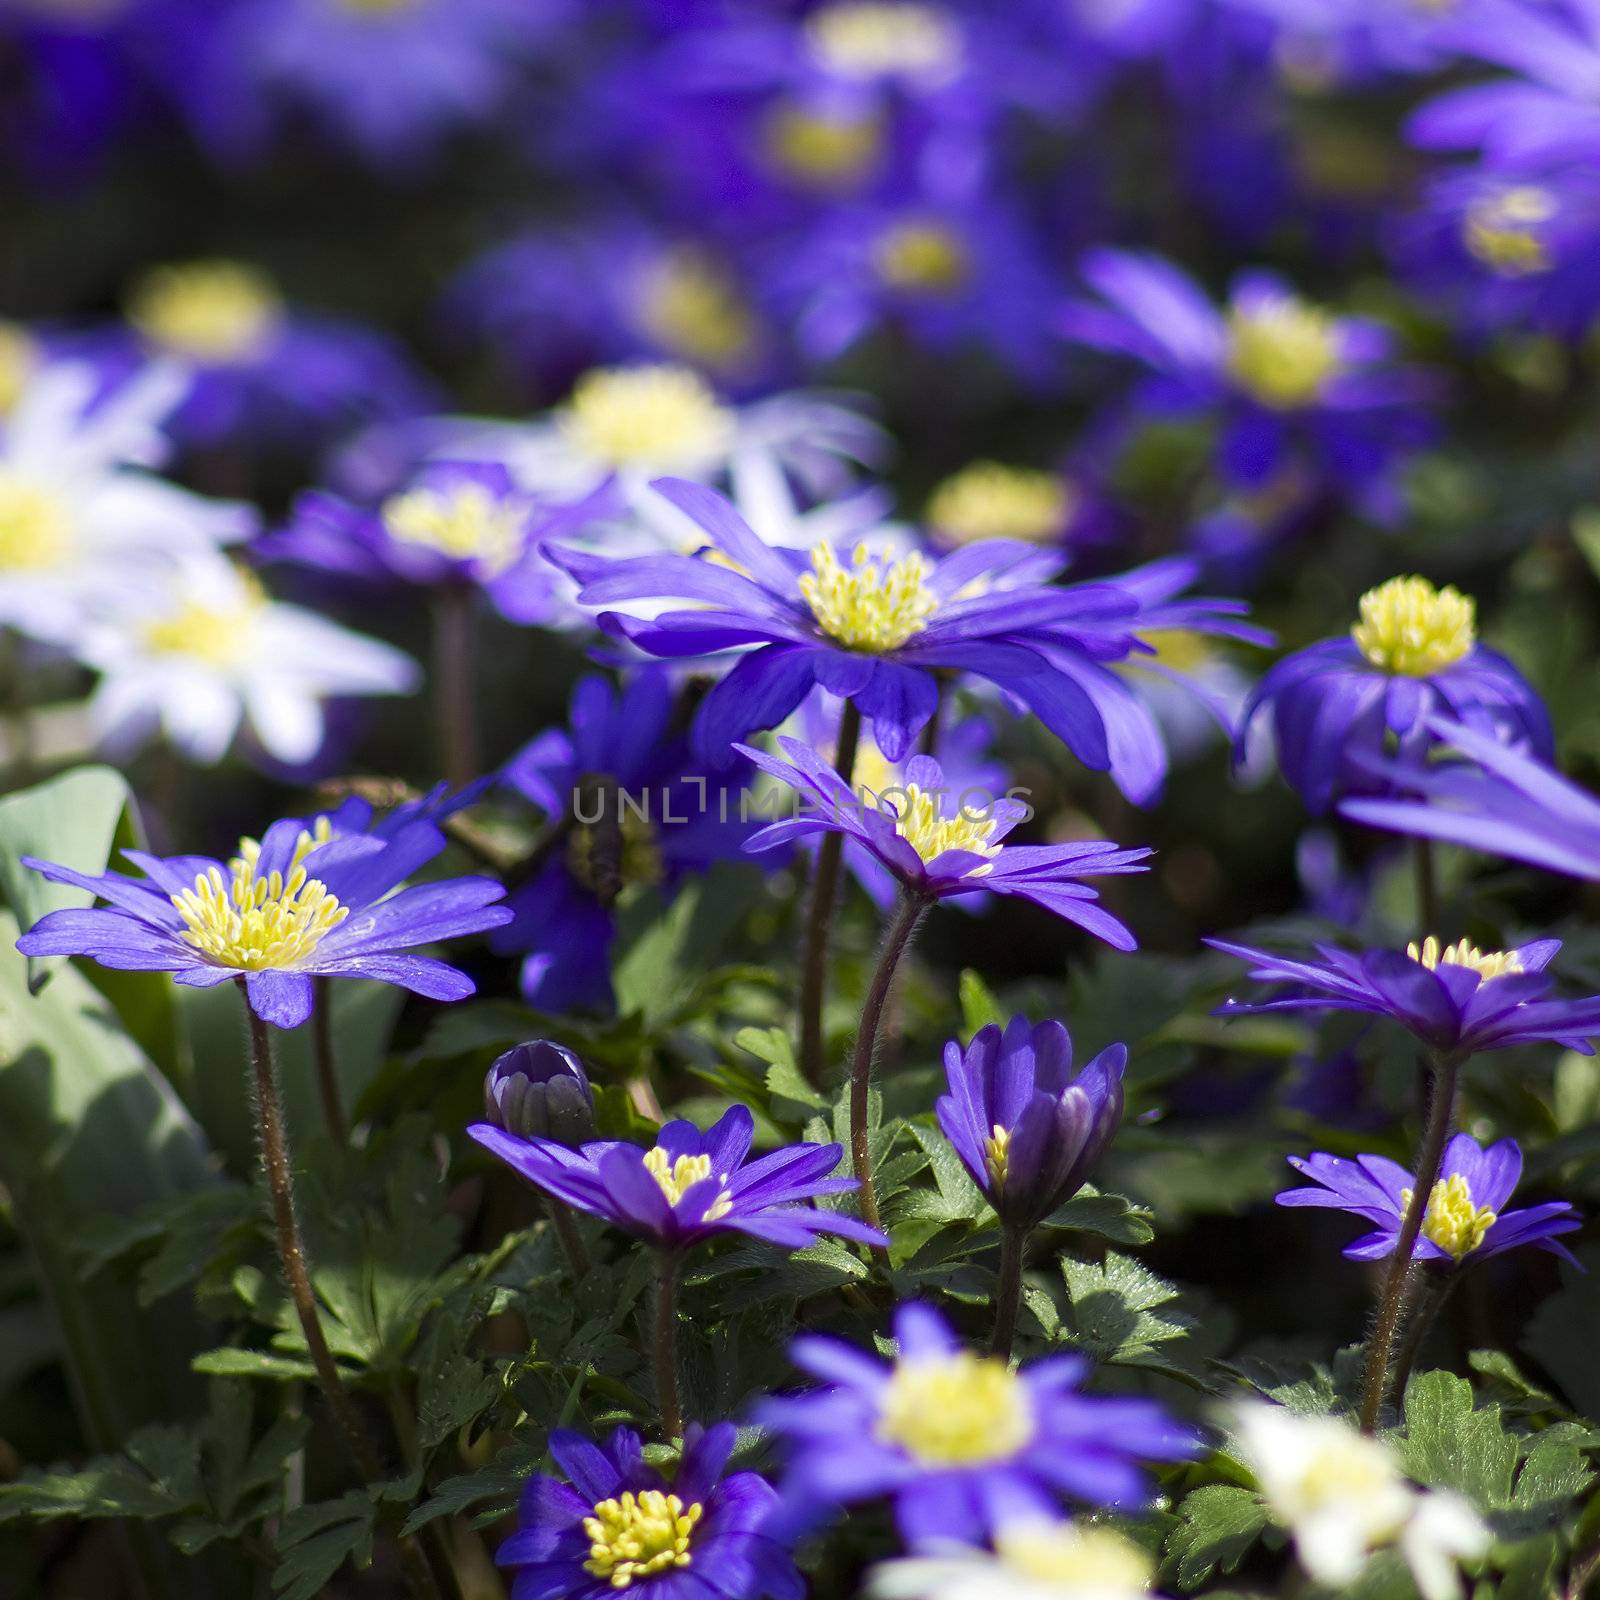 purple japanese anemone flowers by miradrozdowski